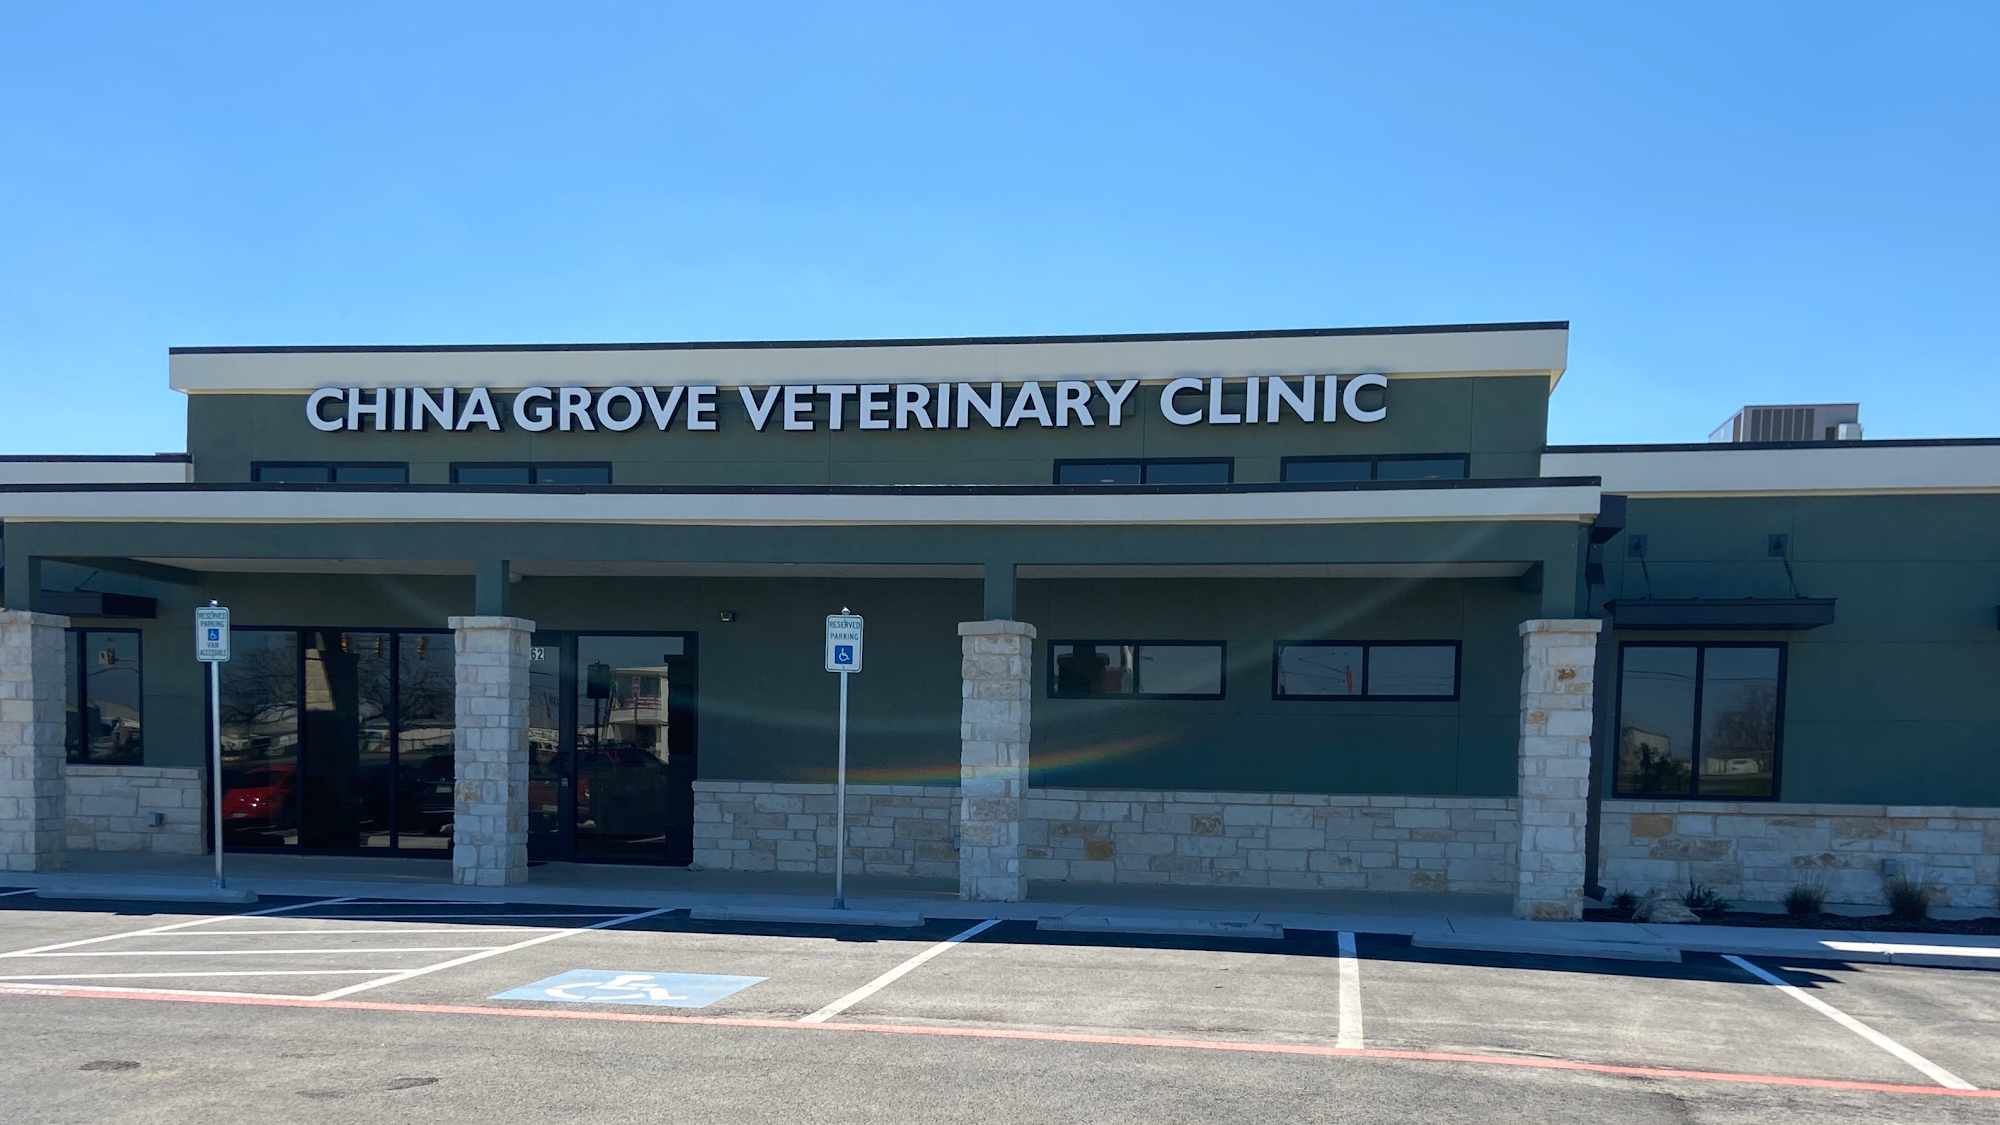 China Grove Veterinary Clinic